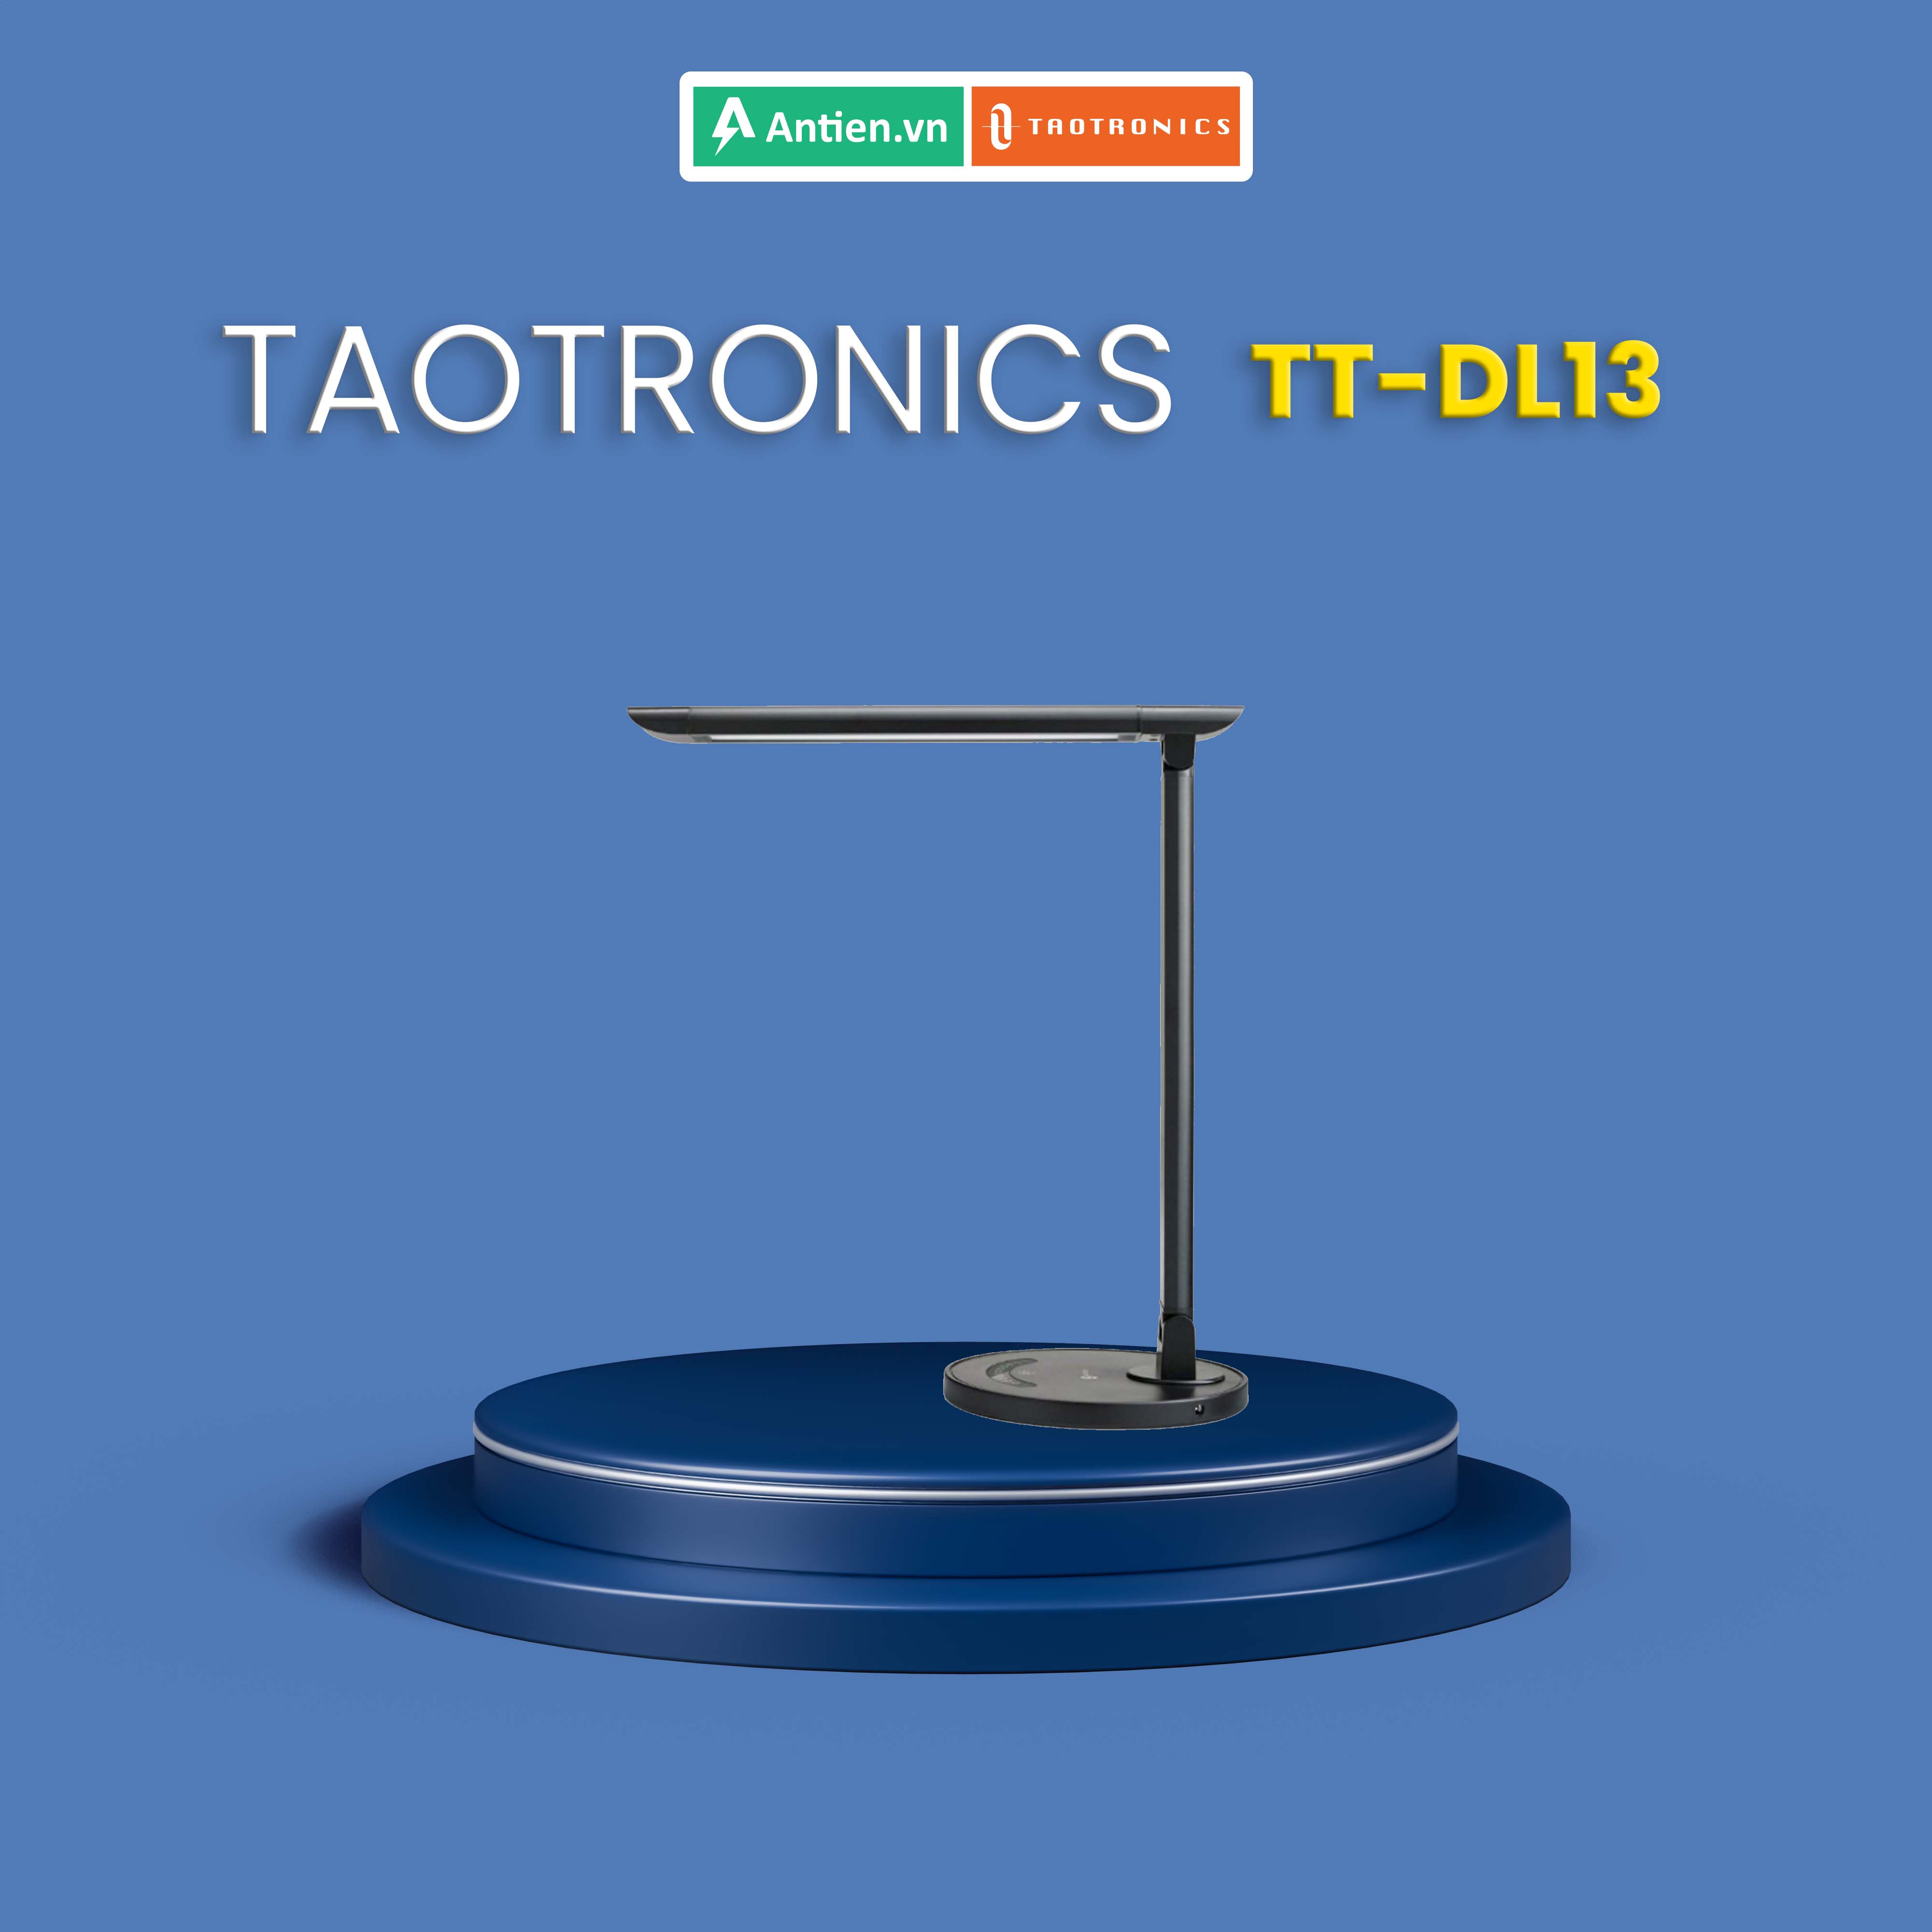 Đèn học chống cận TaoTronics TT-DL13, 12W, 5 chế độ sáng, 7 mức sáng